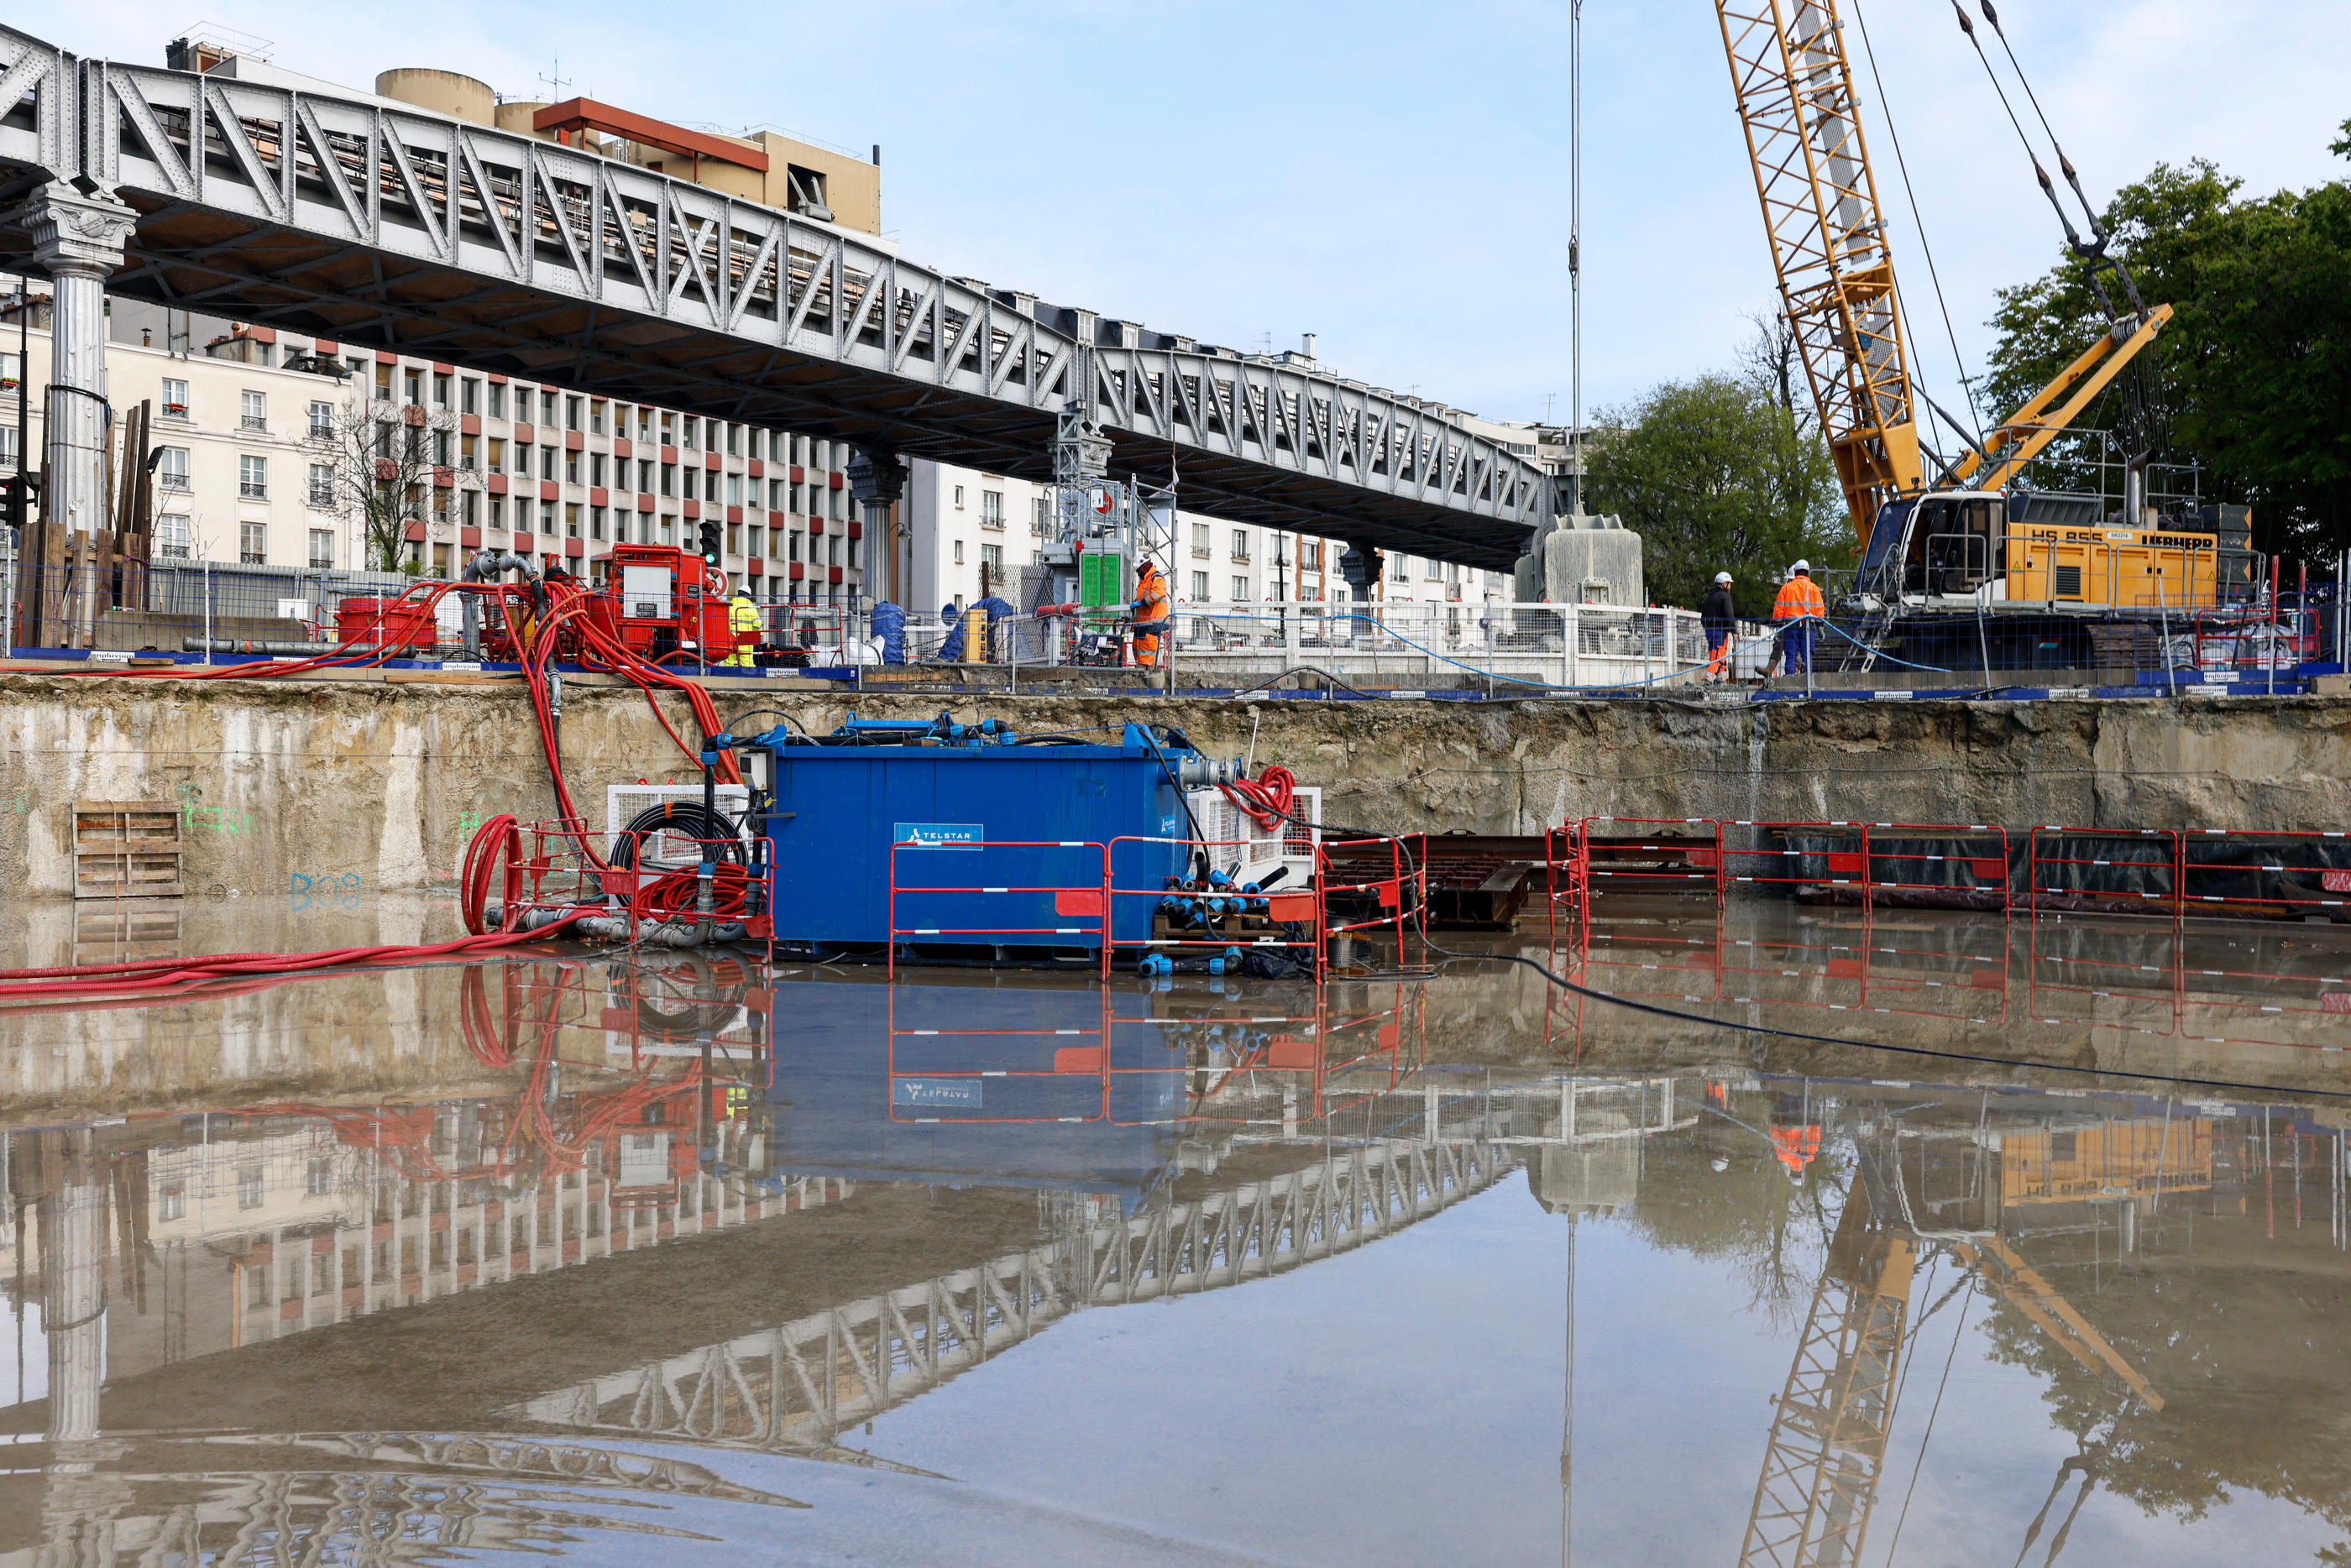 Paris (XIIIe), le 12 avril 2023. A deux pas de la gare d’Austerlitz, des pelleteuses creusent sans relâche un bassin qui servira à stocker l'eau en cas de fortes pluies. LP/Olivier Corsan